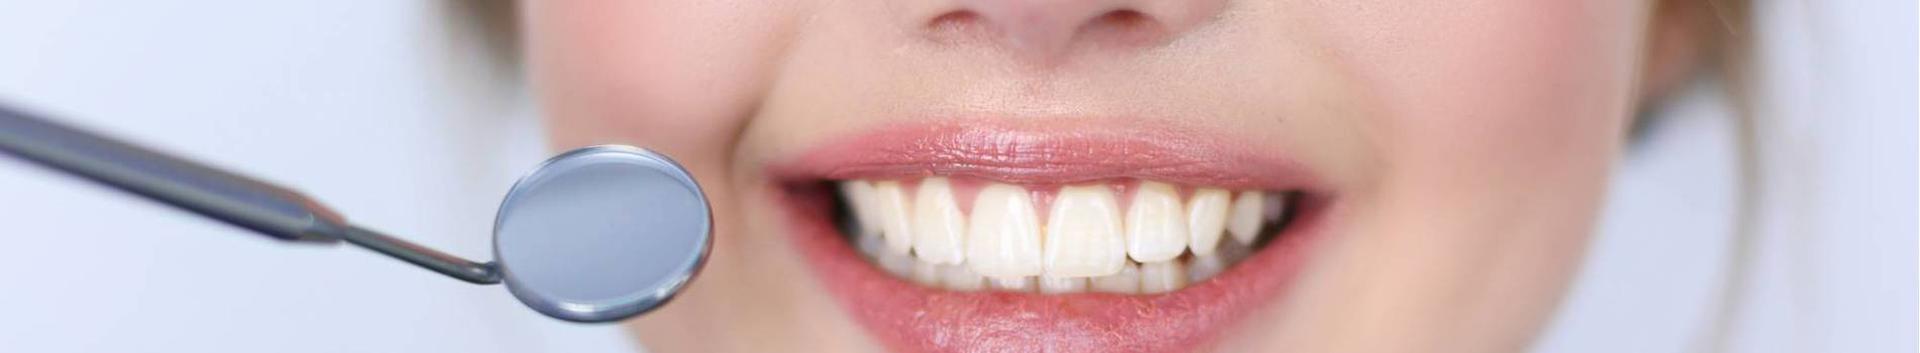 Esmaklassiline hambaravi, mille eesmärgiks on erakordne suutervis pikaks ajaks. Kanname Sinu hammaste eest parimat hoolt.